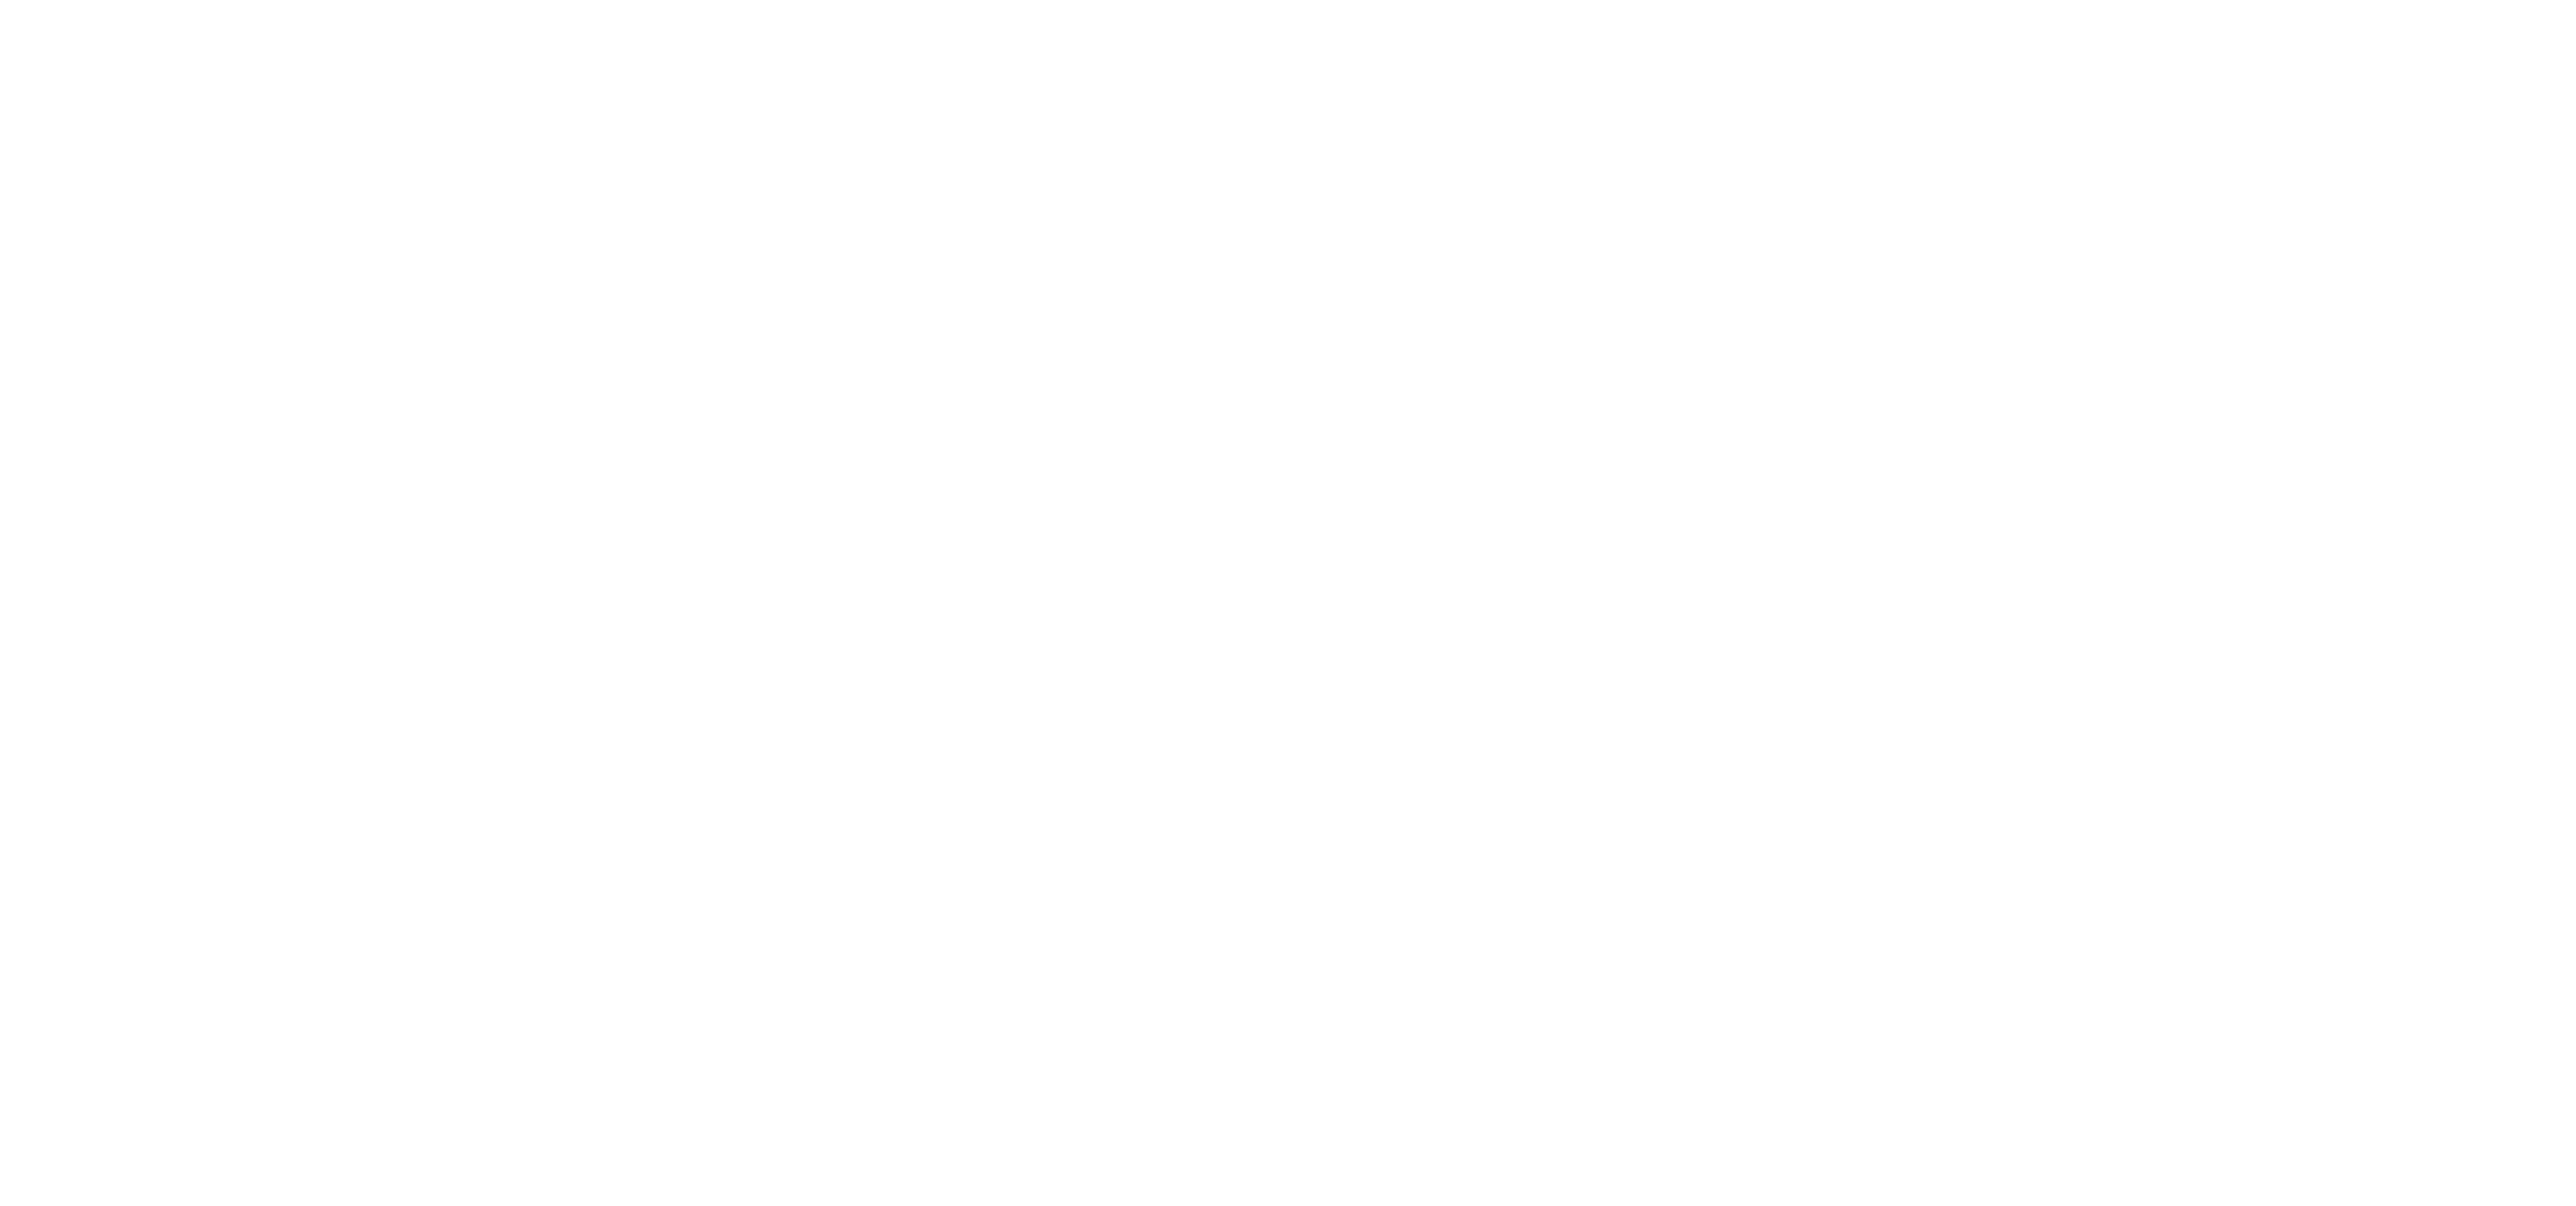 Zoneout London